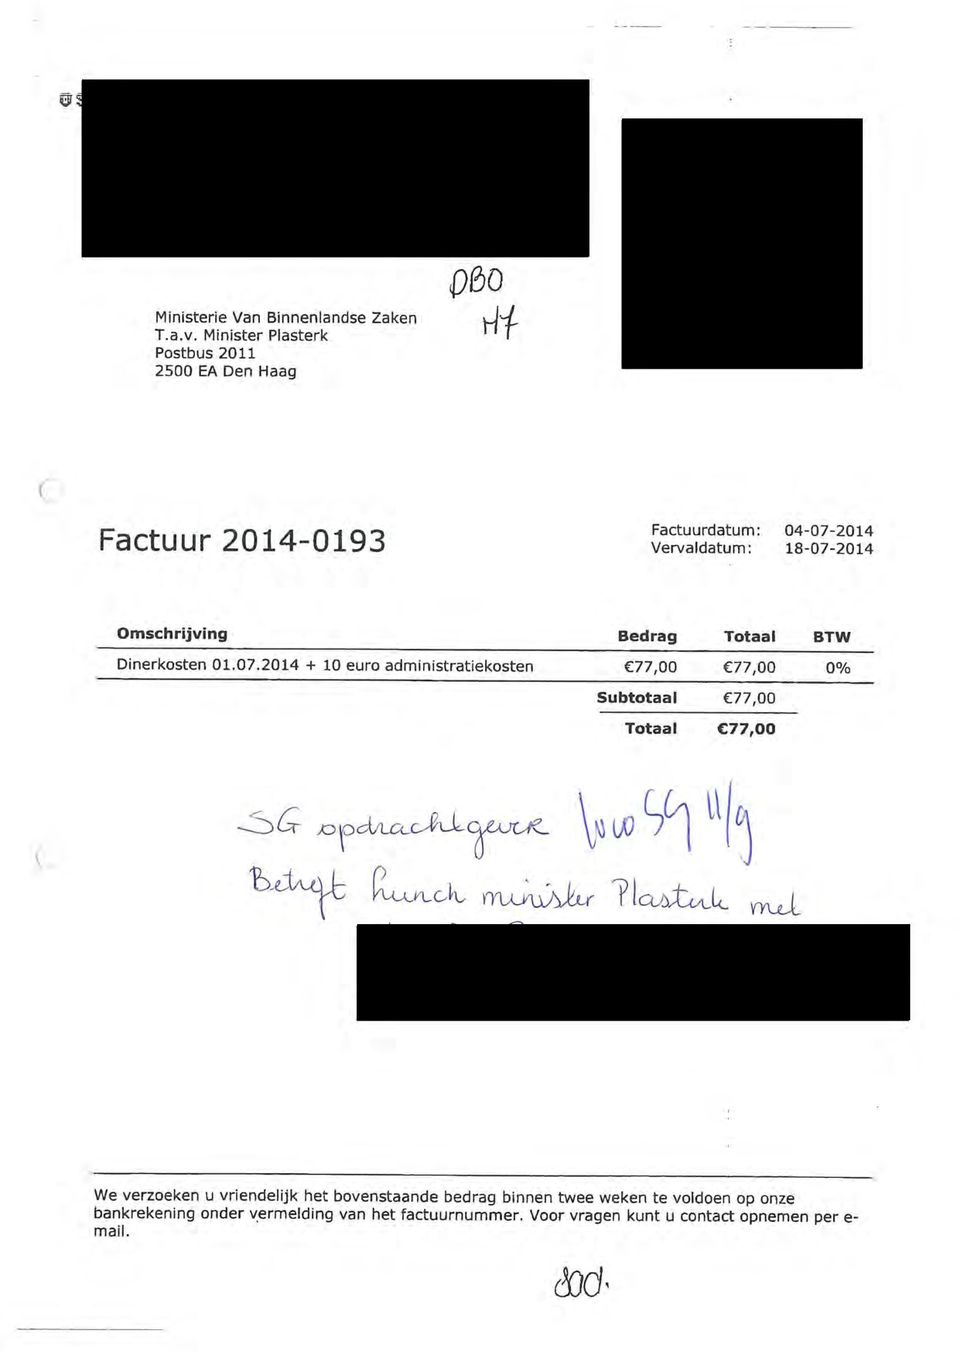 Omschrijving Bedrag Totaal BTW Dinerkosten 01.07.